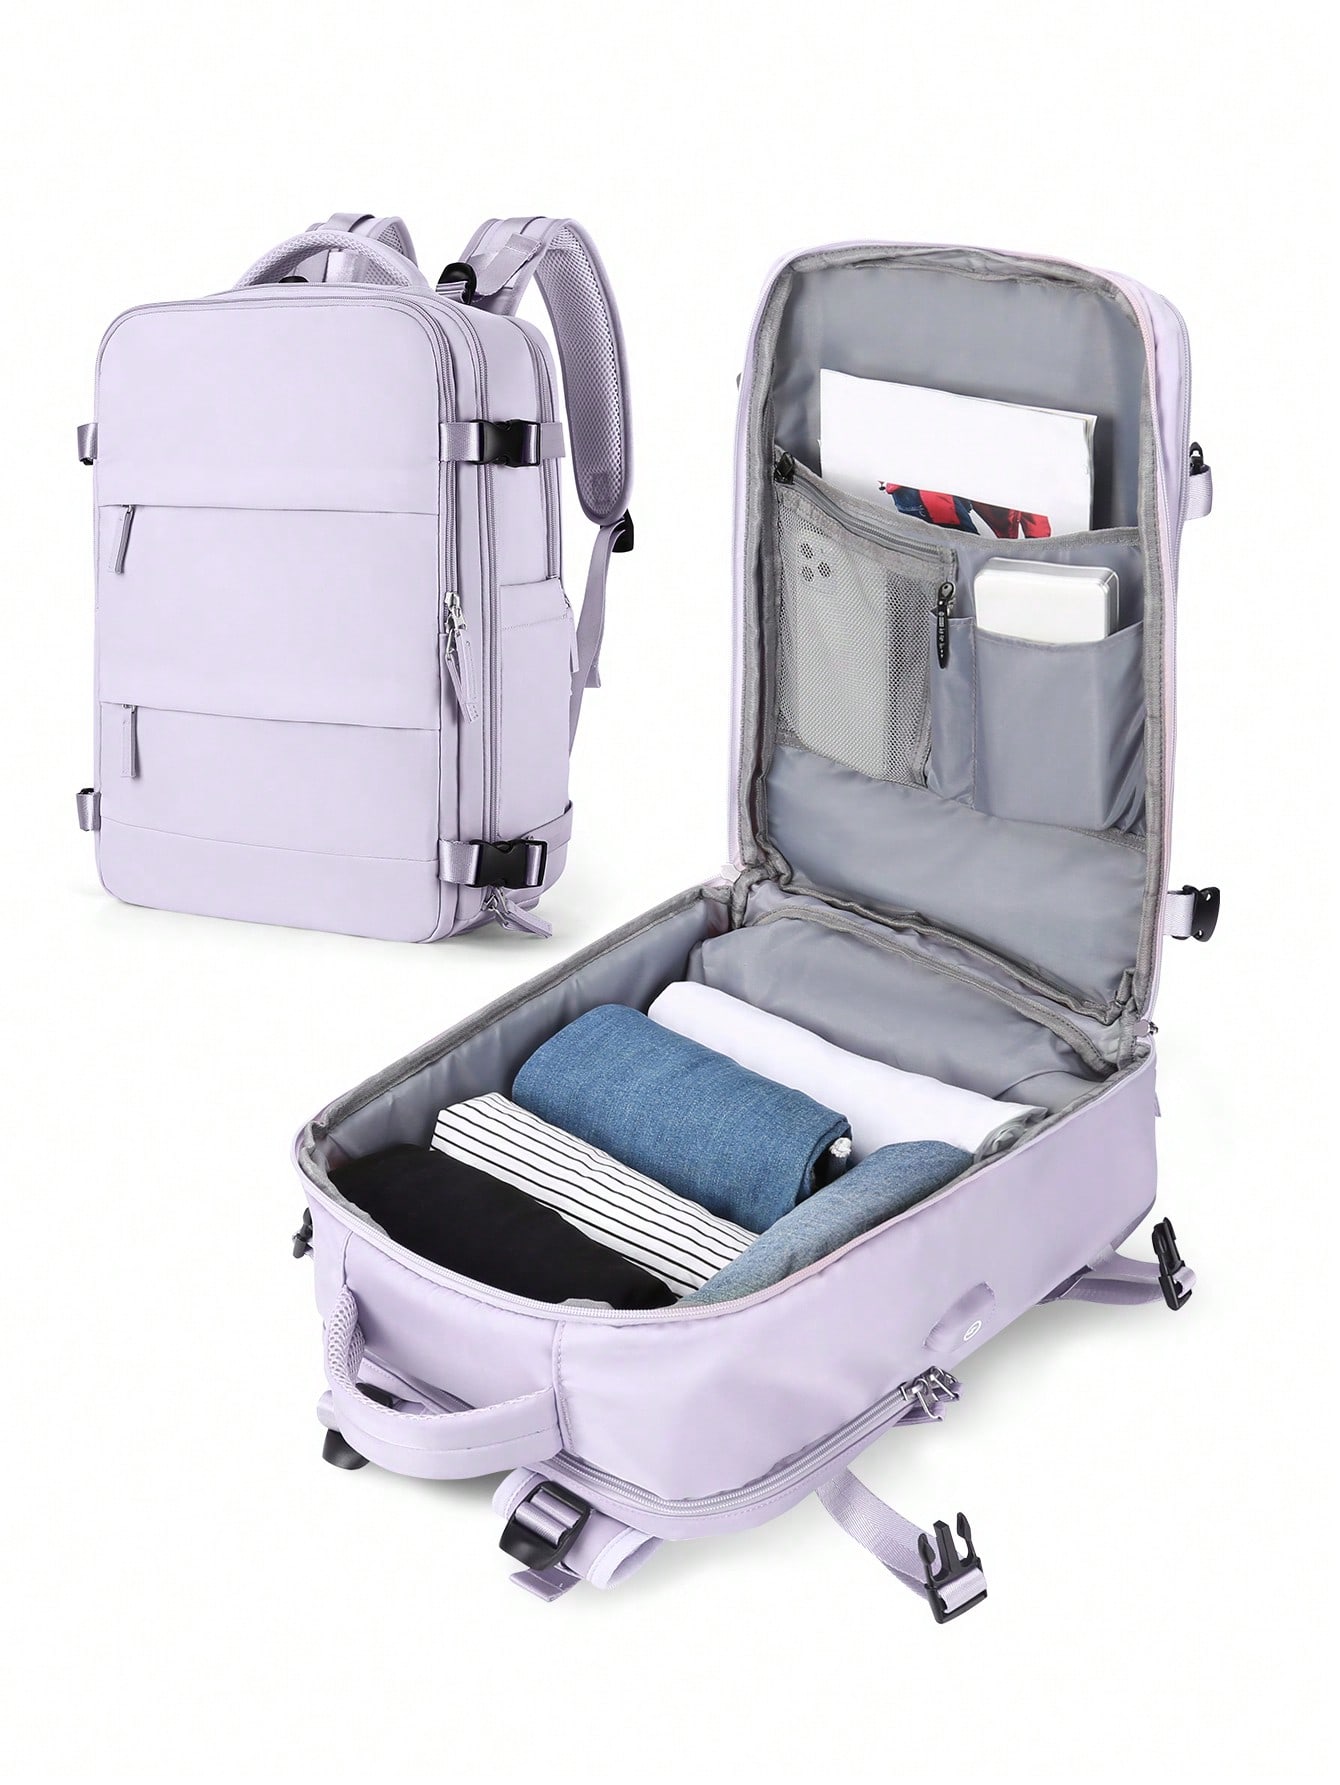 Женский дорожный рюкзак с USB-портом для зарядки, сиреневый фиолетовый женский рюкзак модная и элегантная сумка мягкий кожаный однотонный рюкзак на молнии удобная сумка для дам дизайнерский дорожный рюкзак